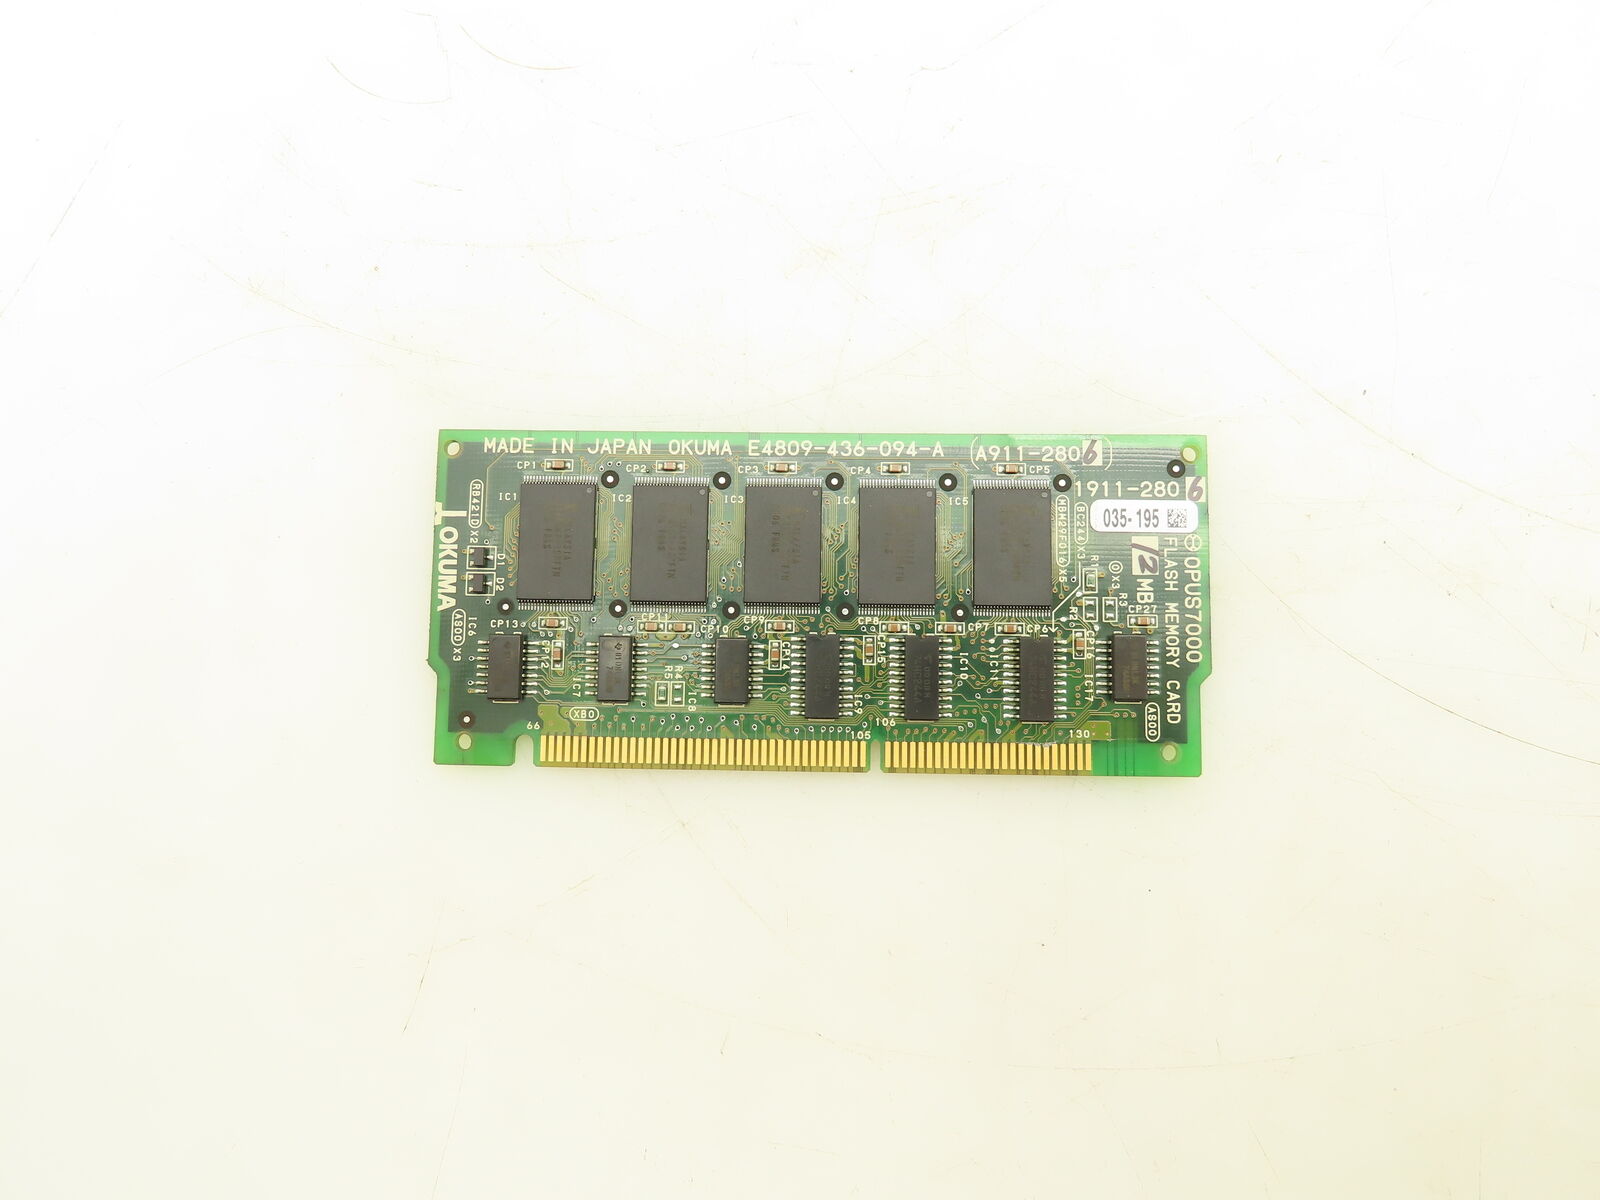 Okuma 1911-2806 Opus 7000 Flash Memory Card 12MB Circuit Board